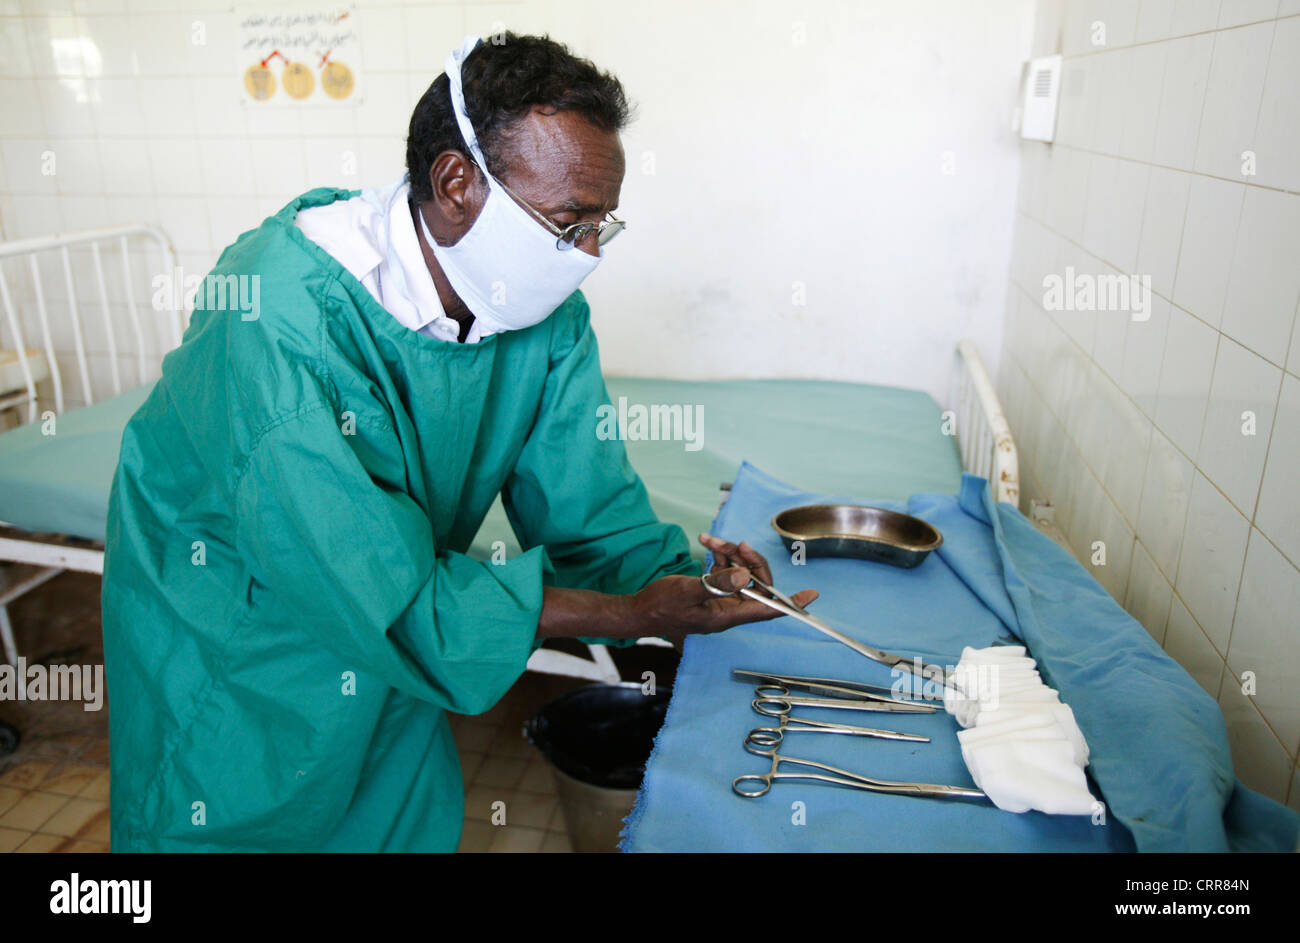 Le personnel médical les équipements médicaux stérilisés dans un hôpital. Banque D'Images